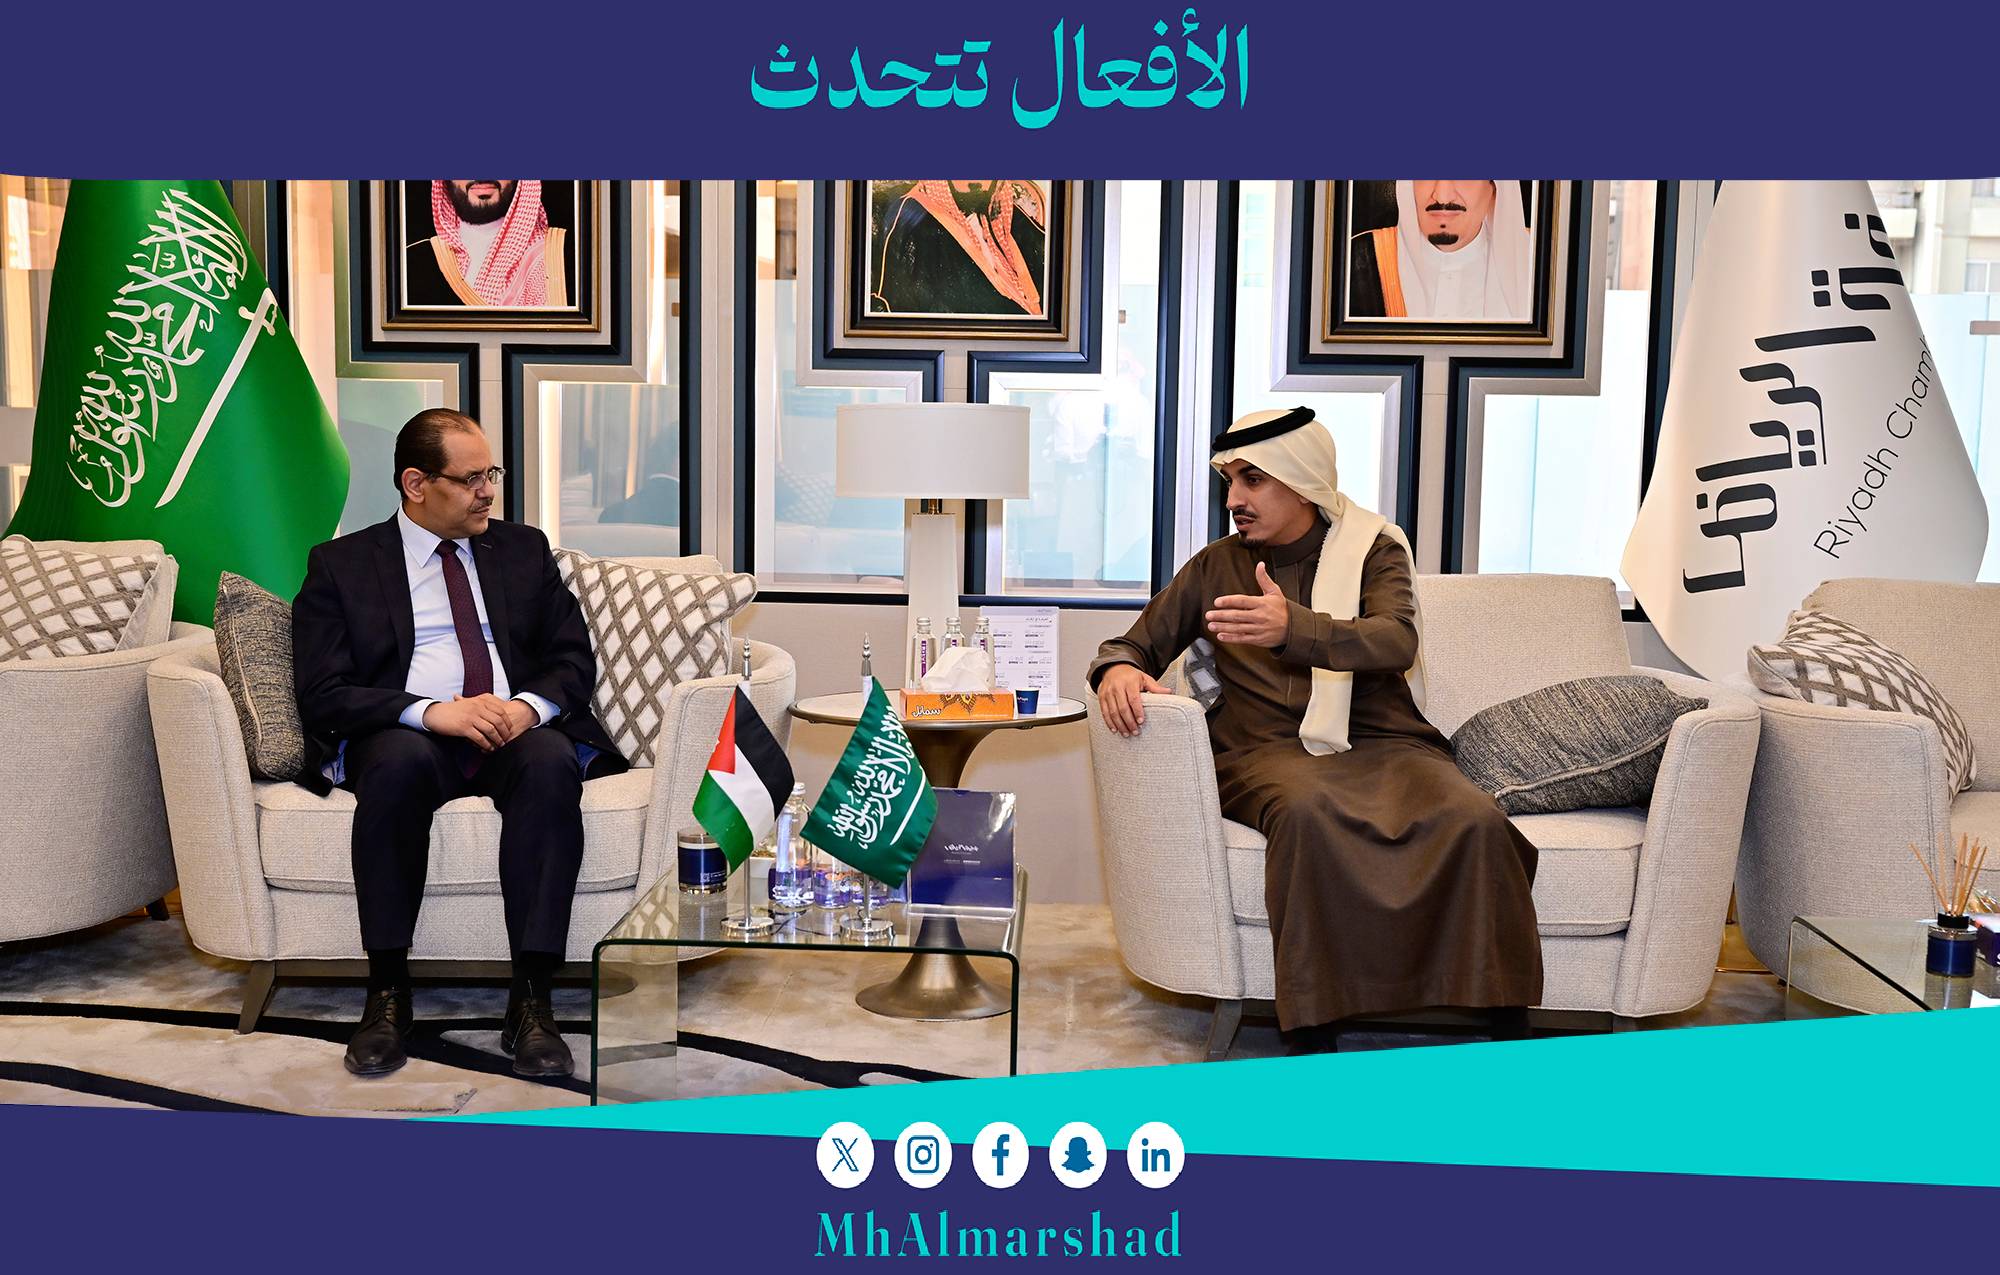 استقبلت اليوم بمقر الغرفة سفير المملكة الأردنية الهاشمية لدى المملكة الدكتور هيثم أبو الفول، وبحث اللقاء أوجه التعاون بين قطاعي الأعمال بالبلدين ودورهما في تعزيز نمو التبادل التجاري